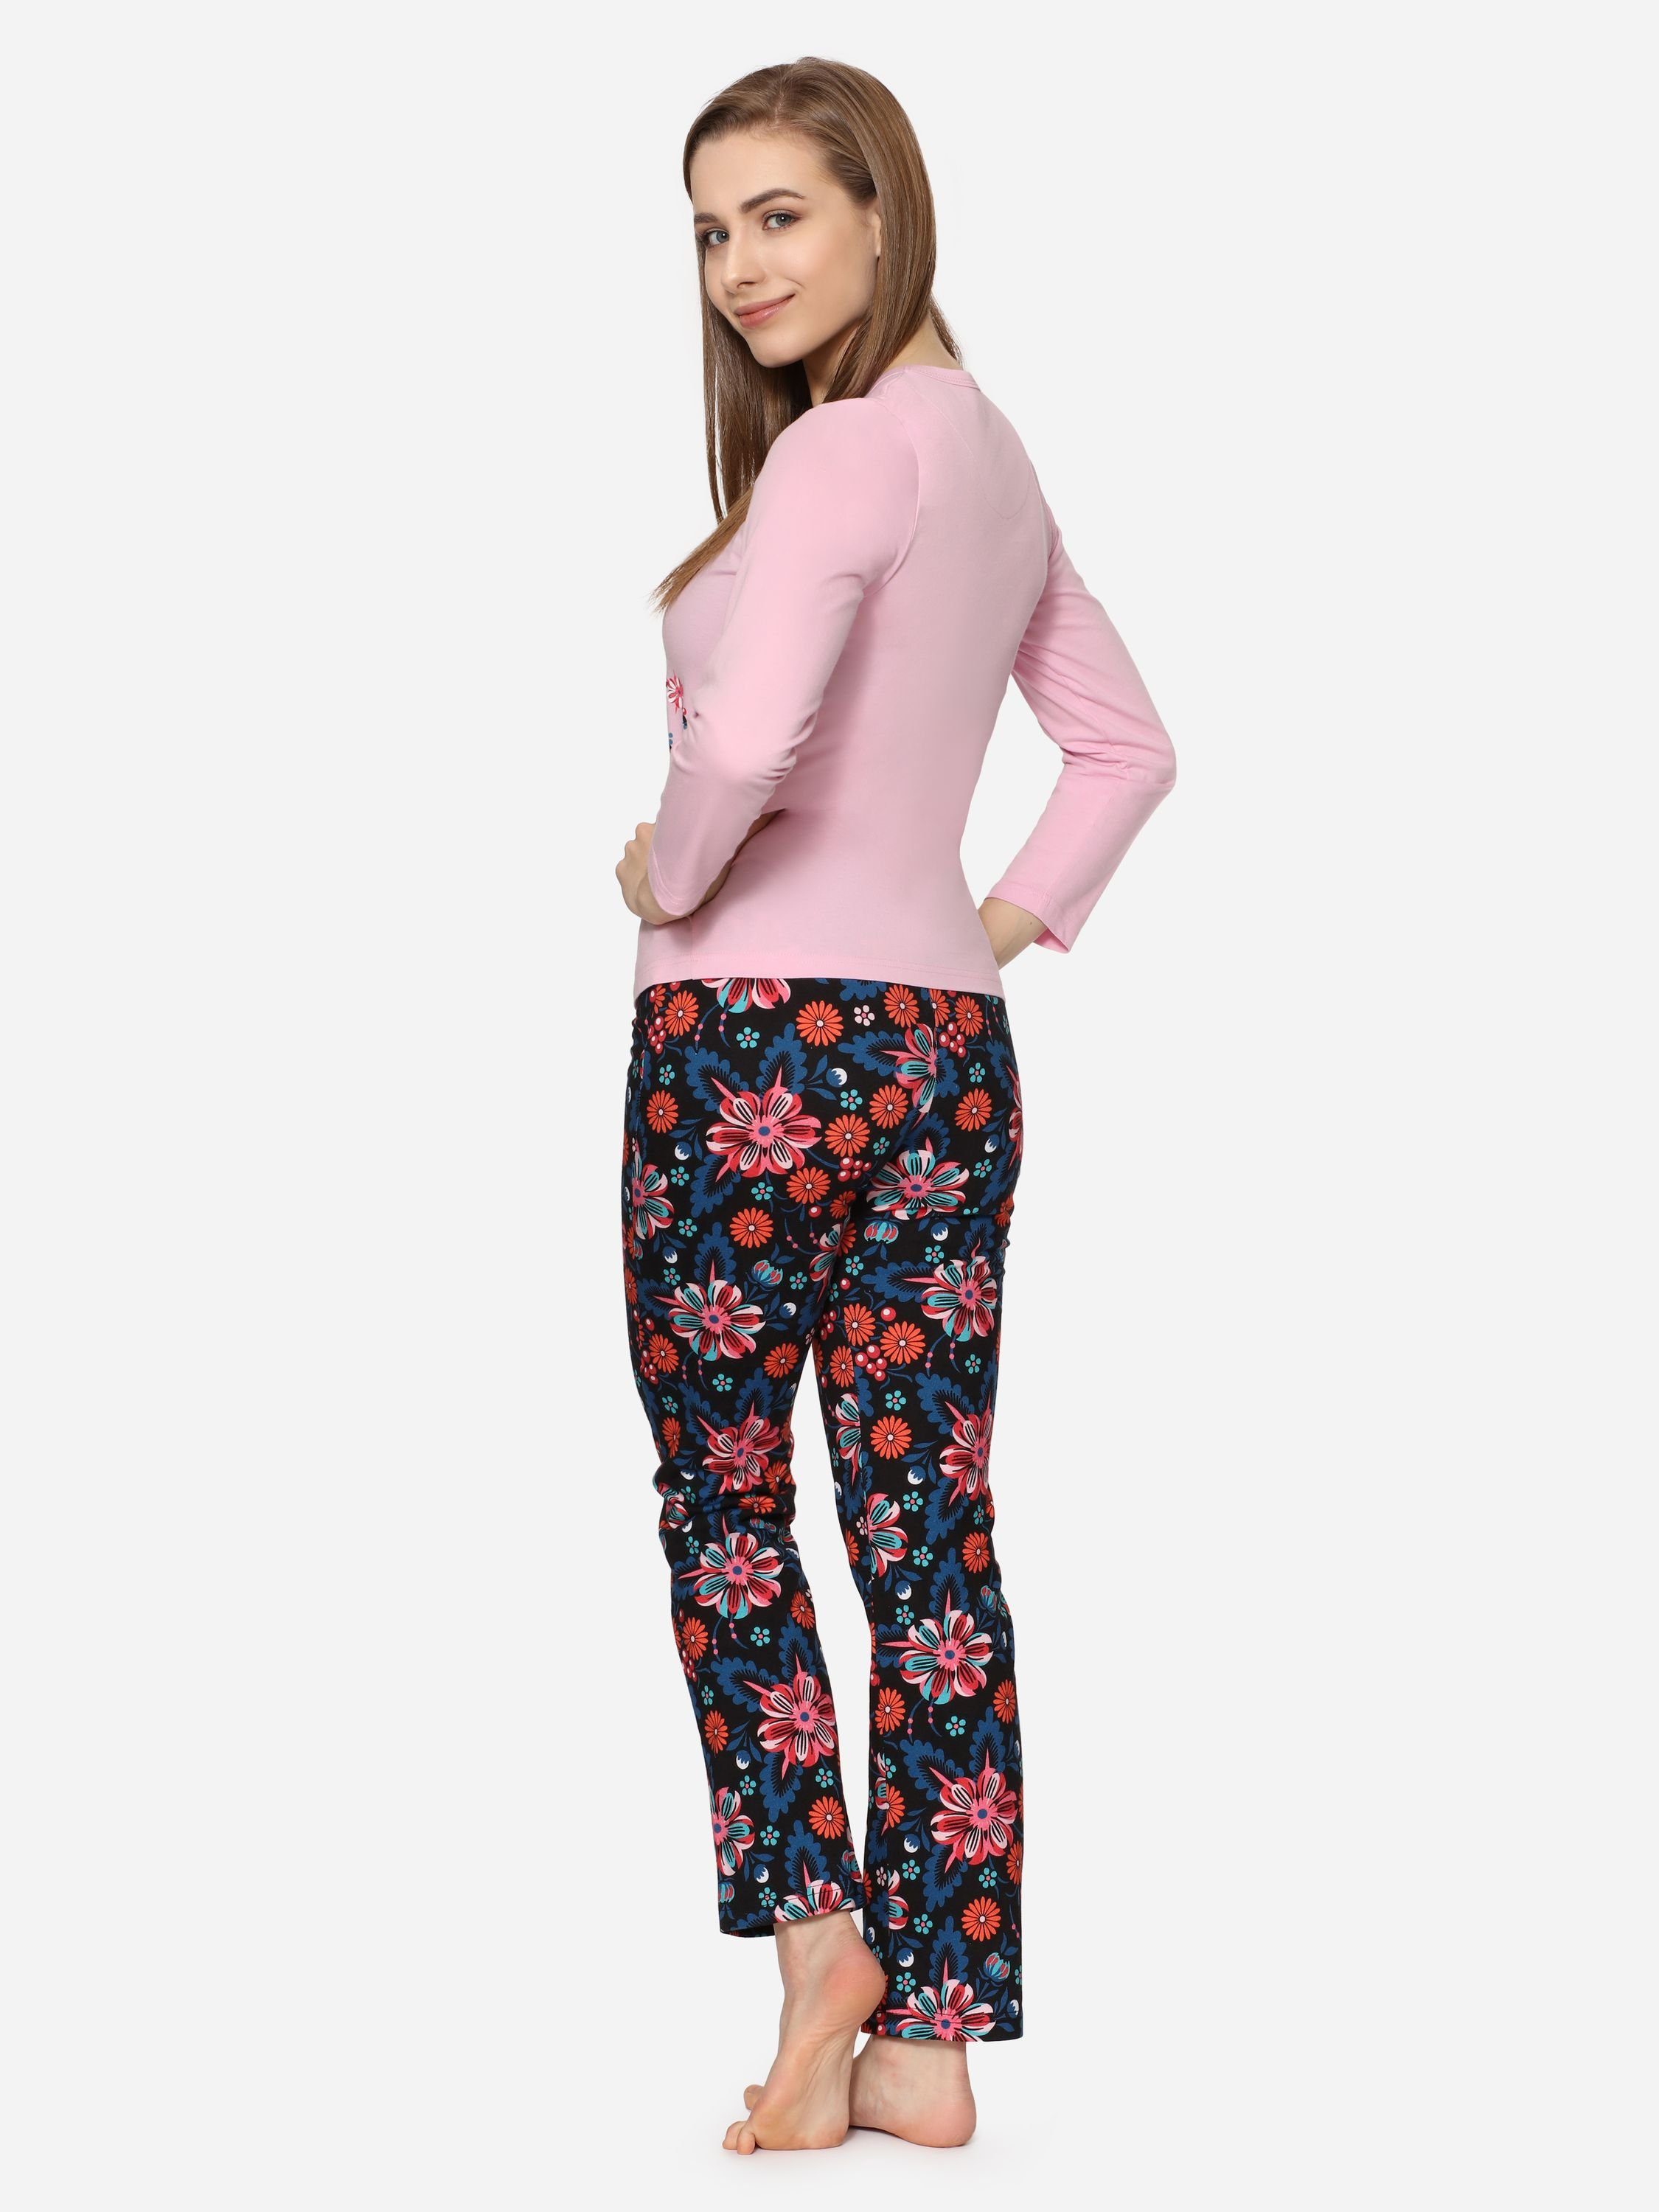 Damen Zweiteilieger Style MS10-192 Licht Schlafanzug Pyjama Rosa/Blumen2 Merry Lang Winter Schlafanzug